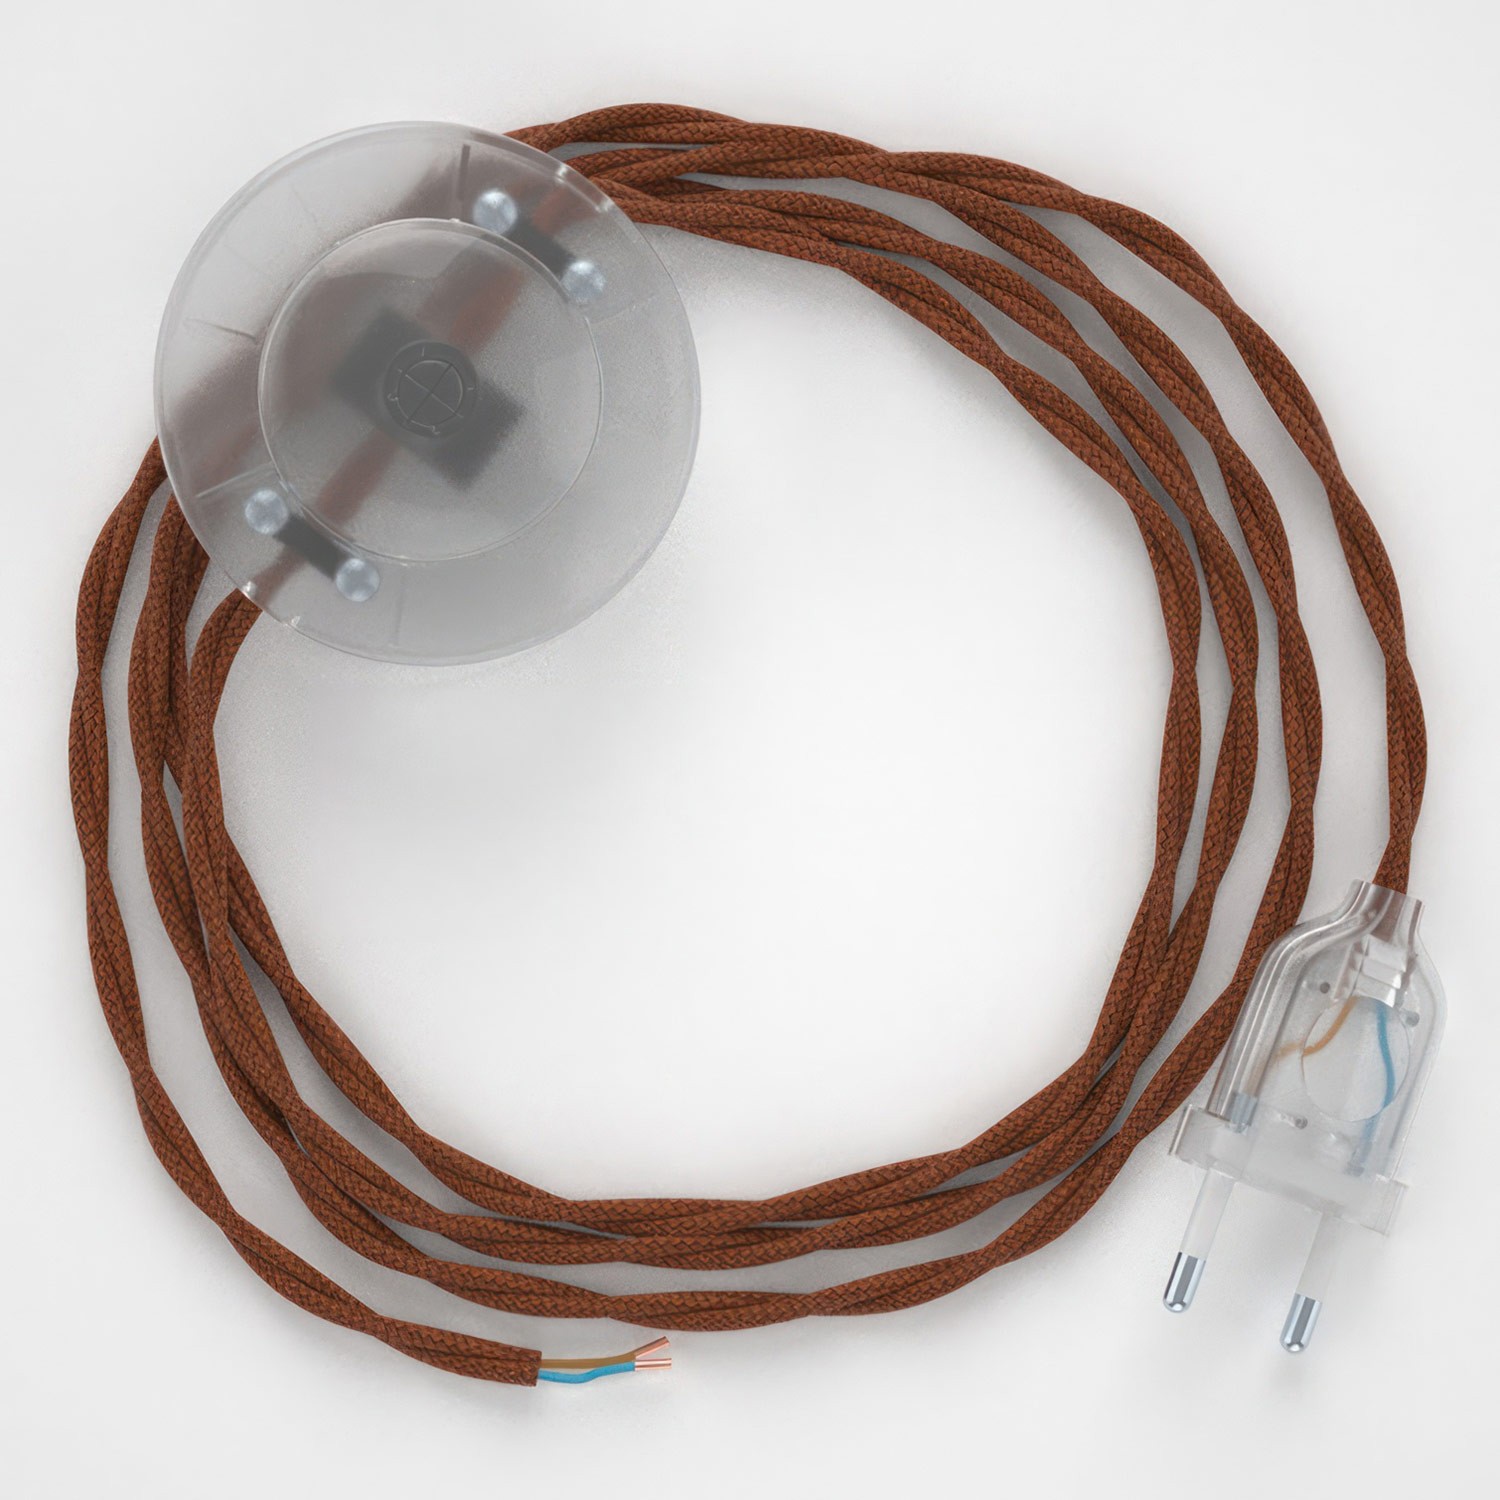 Cableado para lámpara de pie, cable TC23 Algodón Ciervo 3 m. Elige tu el color de la clavija y del interruptor!